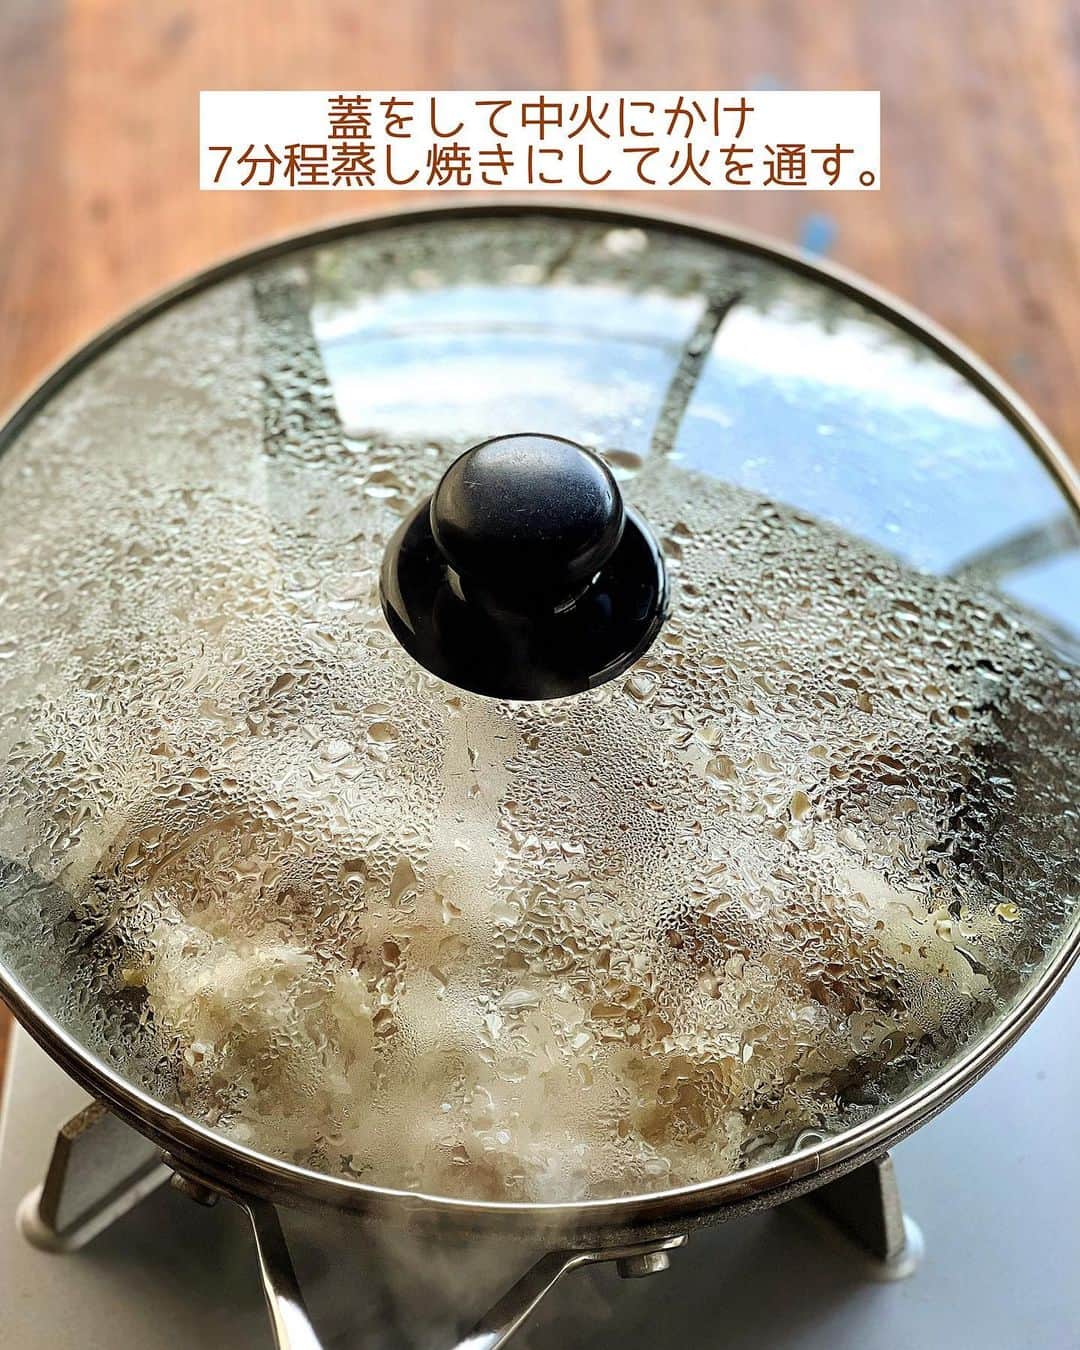 Mizuki【料理ブロガー・簡単レシピ】さんのインスタグラム写真 - (Mizuki【料理ブロガー・簡単レシピ】Instagram)「・フライパン放置で完成🍳 ⁡ ［#レシピ ］ ーーーーーーーーーーーーーーーーーーーー ごまだれで！豚バラもやしのフライパン蒸し ーーーーーーーーーーーーーーーーーーーー ⁡ ⁡ ⁡ おはようございます☺️ ⁡ 昨日リールでご紹介したレシピの 静止画バージョンです✨ ⁡ ⁡ ▼ ▼ ▼ ▼ ▼ ▼ ⁡ ⁡ ほったらかし🤭 \ 豚バラもやしのフライパン蒸し / ⁡ 豚バラ×もやしでコスパ抜群💕 材料入れたら放置で完成！の 超簡単ヘルシーレシピです✨ お酒で蒸すと香りがよくなり お肉がやわらか〜く仕上がりますよ♩ ⁡ ごまだれもおいしいので よかったらお試し下さいね😋 ⁡ ⁡ ⁡ ⋱⋰ ⋱⋰ ⋱⋰ ⋱⋰ ⋱⋰ ⋱⋰ ⋱⋰ 📍簡単・時短・節約レシピ更新中  #Threads もこちらから▼ @mizuki_31cafe ⁡ 📍謎の暮らし＆変なライブ垢 @mizuki_kurashi ⋱⋰ ⋱⋰ ⋱⋰ ⋱⋰ ⋱⋰ ⋱⋰ ⋱⋰ ⁡ ⁡ ⁡ ＿＿＿＿＿＿＿＿＿＿＿＿＿＿＿＿＿＿＿ 【2人分】 豚バラ薄切り肉...150g もやし...1袋(200g) 酒...大2 ●すりごま...大2 ●醤油...大1.5 ●酢...大1 ●砂糖・ごま油...小2 ねぎ(小口切り)...適量 ⁡ 1.●を合わせてごまだれを作る。豚肉は7cm長さに切る。 2.フライパンにもやしを広げ、豚肉をなるべく重ならないようにのせ、酒を振る。 3.蓋をして中火にかけ、7分程蒸し焼きにし、火が通ったら1のごまだれとねぎをかけて食べる。 ￣￣￣￣￣￣￣￣￣￣￣￣￣￣￣￣￣￣￣ ⁡ ⁡ 《ポイント》 ♦︎直径26cmのフライパンを使用しています♩ ♦︎豚肉はなるべく重ならないように広げてのせてください♩ ♦︎今回はごまだれをかけましたが、ポン酢をかけるだけでもおいしいです♩ ⁡ ⁡ ⁡ ⁡ ⁡ ⁡ 💬 #Threads はじめました📱 レシピ未満の料理と 変な暮らしを綴っています✍️ ゆるっと繋がりましょう🥰 ⁡ ⁡ ⁡ ⁡ ⋱⋰ ⋱⋰ ⋱⋰ ⋱⋰ ⋱⋰ ⋱⋰ ⋱⋰  愛用している調理器具・器など   #楽天ROOMに載せてます ‎𐩢𐩺  (ハイライトから飛べます🕊️) ⋱⋰ ⋱⋰ ⋱⋰ ⋱⋰ ⋱⋰ ⋱⋰ ⋱⋰ ⁡ ⁡ ⁡ ⁡ ⁡ ⁡ ✼••┈┈┈┈┈••✼••┈┈┈┈┈••✼ 今日のごはんこれに決まり！ ‎𓊆#Mizukiのレシピノート 500品𓊇 ✼••┈┈┈┈┈••✼••┈┈┈┈┈••✼ ⁡ ˗ˏˋ おかげさまで25万部突破 ˎˊ˗ 料理レシピ本大賞準大賞を受賞しました✨ ⁡ 6000点の中からレシピを厳選し まさかの【500レシピ掲載】 肉や魚のメインおかずはもちろん 副菜、丼、麺、スープ、お菓子 ハレの日のレシピ、鍋のレシピまで 全てこの一冊で完結 𓌉◯𓇋 (全国の書店・ネット書店で発売中) ⁡ ⁡ ⁡ ⁡ ⁡ #豚バラもやしのフライパン蒸しm #フライパン蒸し #豚肉 #豚肉レシピ #もやし #もやしレシピ #ごまだれ #ヘルシー #ヘルシー料理 #節約料理 #簡単料理  #時短料理 #料理 #mizukiレシピ  #アルモンデ #時短レシピ #節約レシピ #簡単レシピ」7月10日 6時32分 - mizuki_31cafe